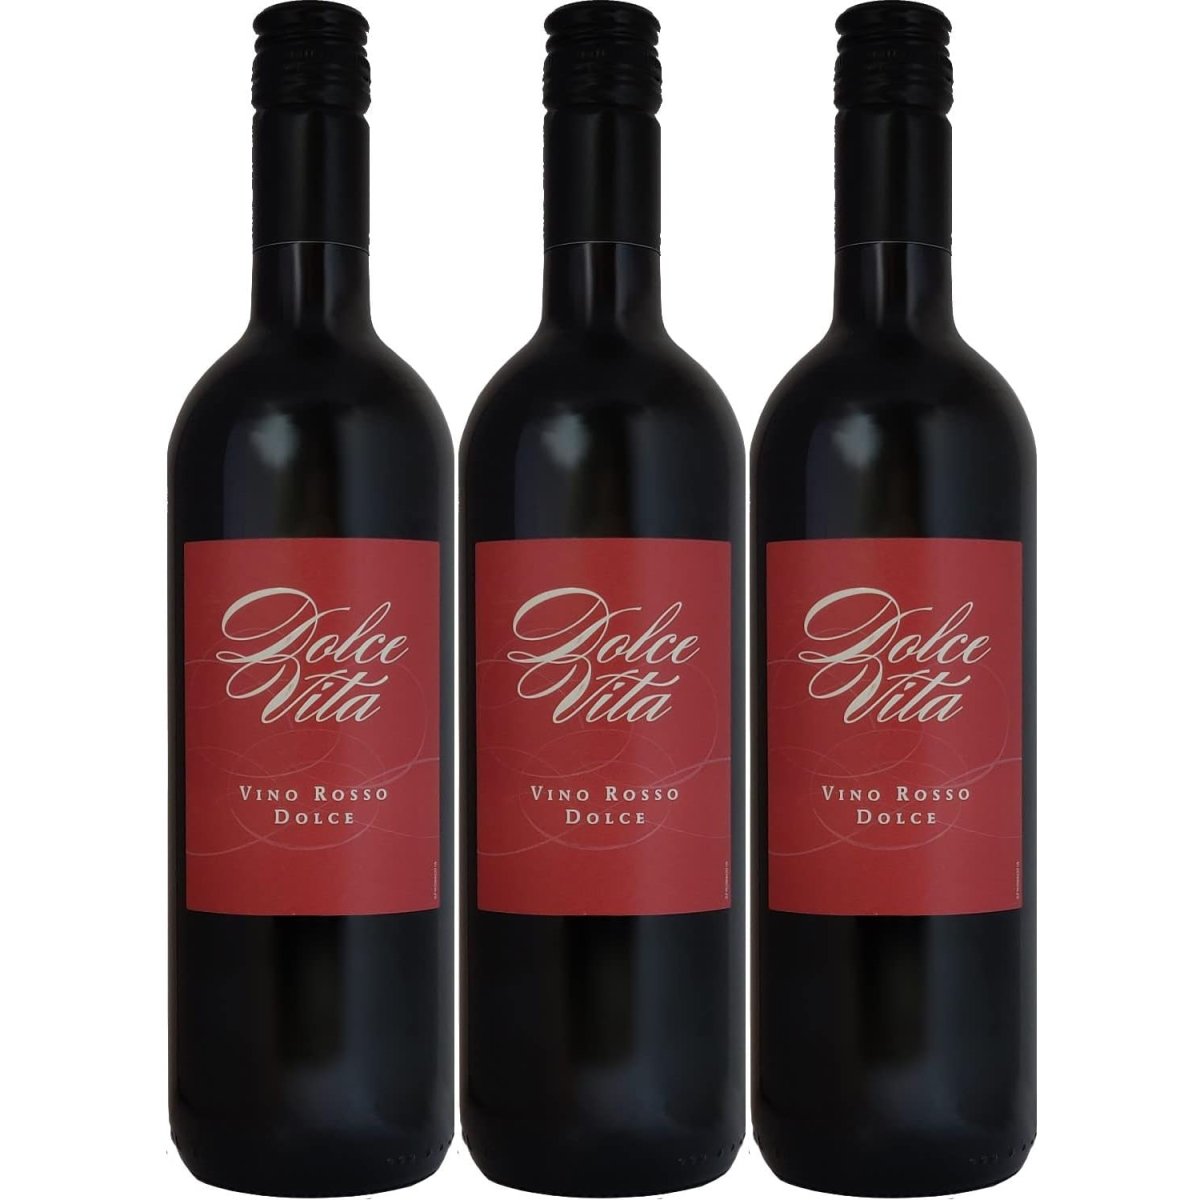 Rotwein (3 dolce Italien Wein x süß 0,75l) – Vita Dolce Versanel rosso Vino